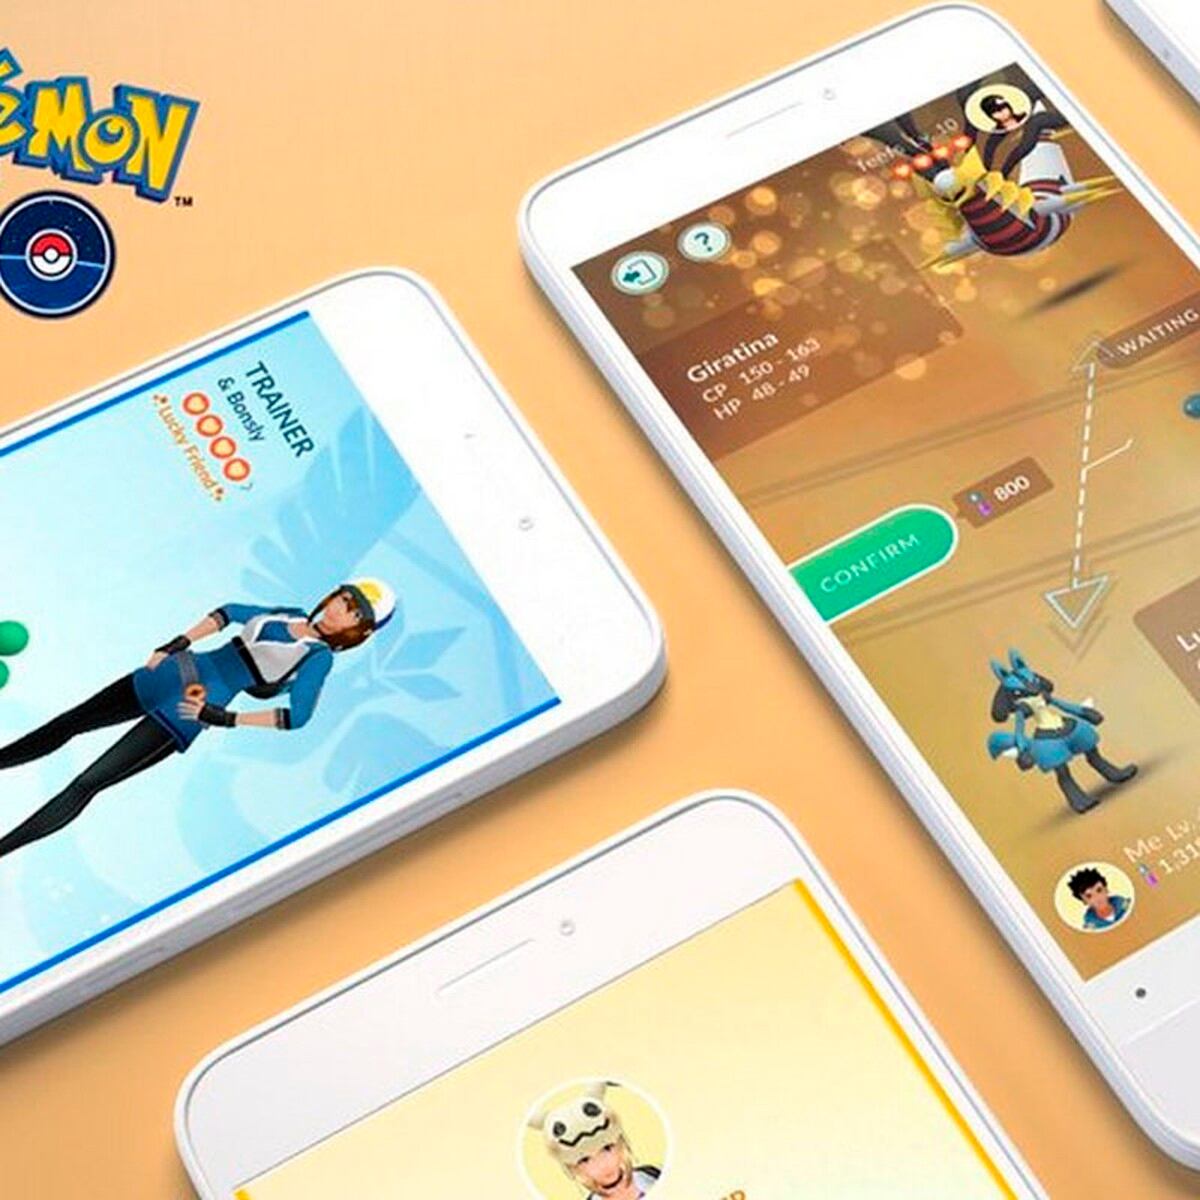 Pokémon GO: los Pokémon de tipo siniestro que hay en el juego, Viral, Truco, Tutorial, Smartphone, TECNOLOGIA